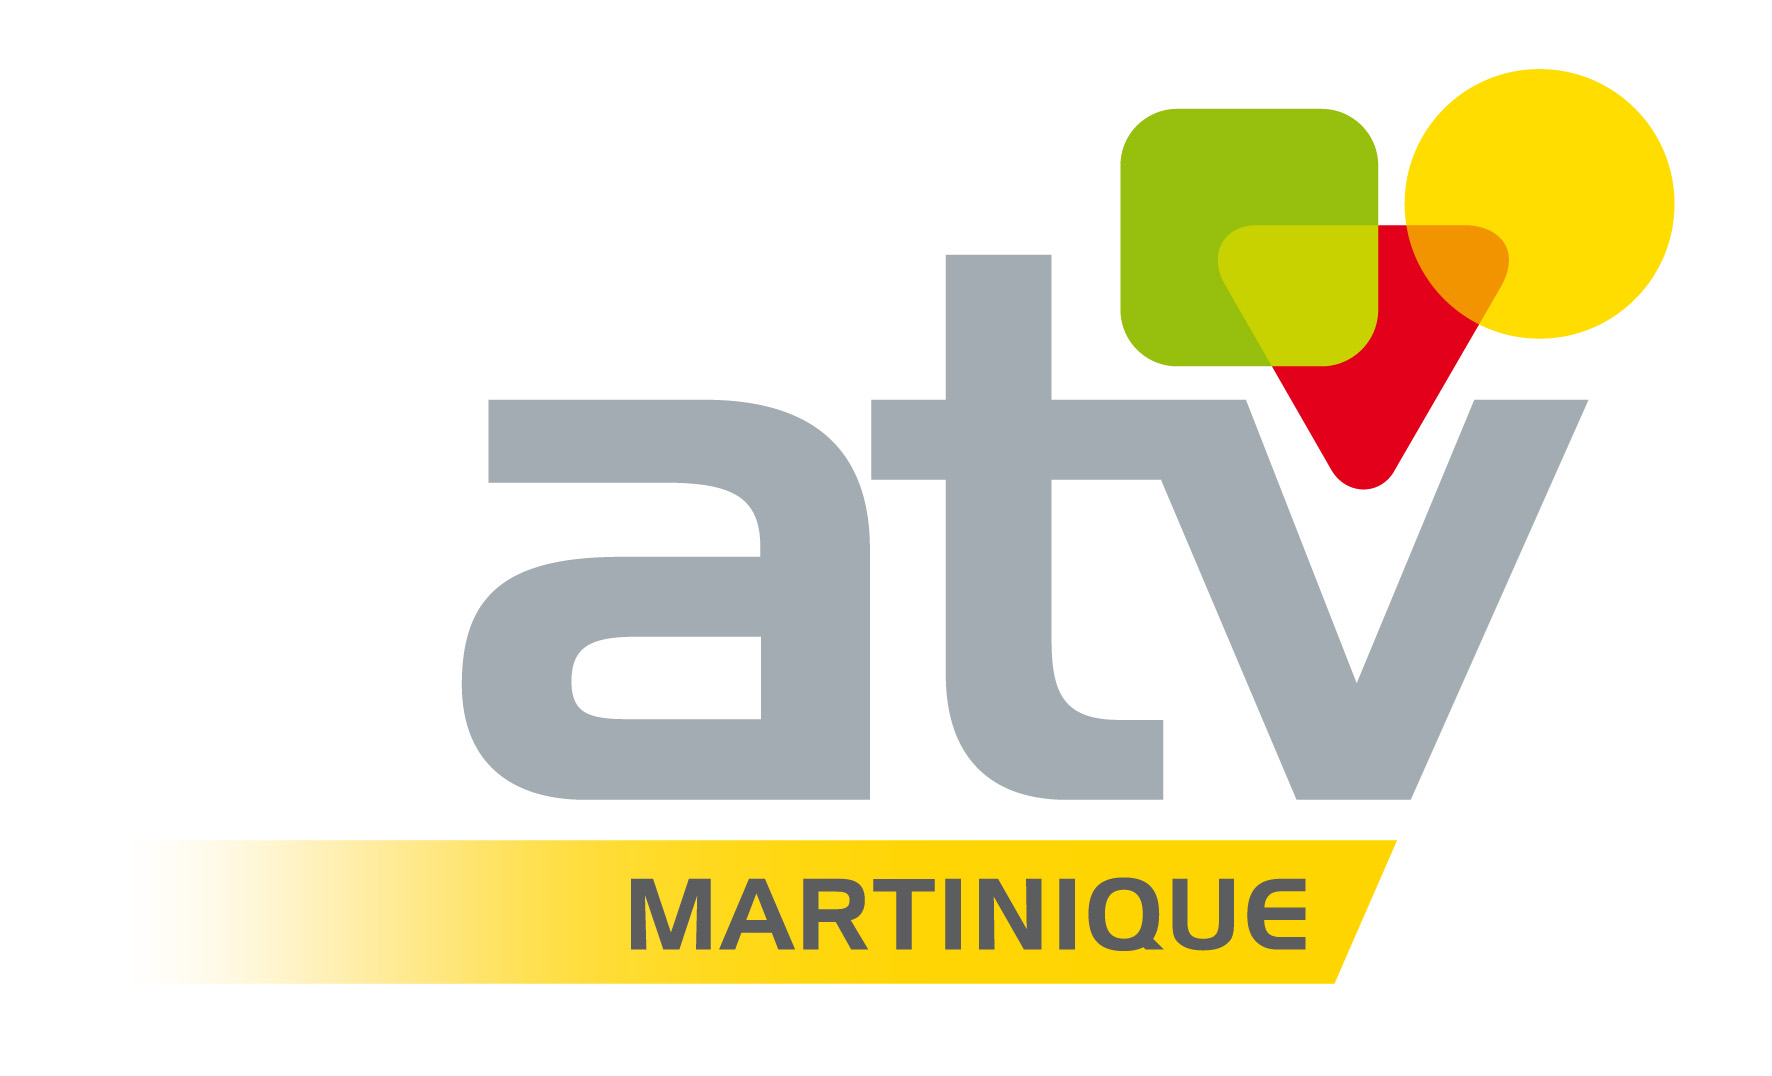 TV: De nouveaux rendez-vous sur ATV Martinique